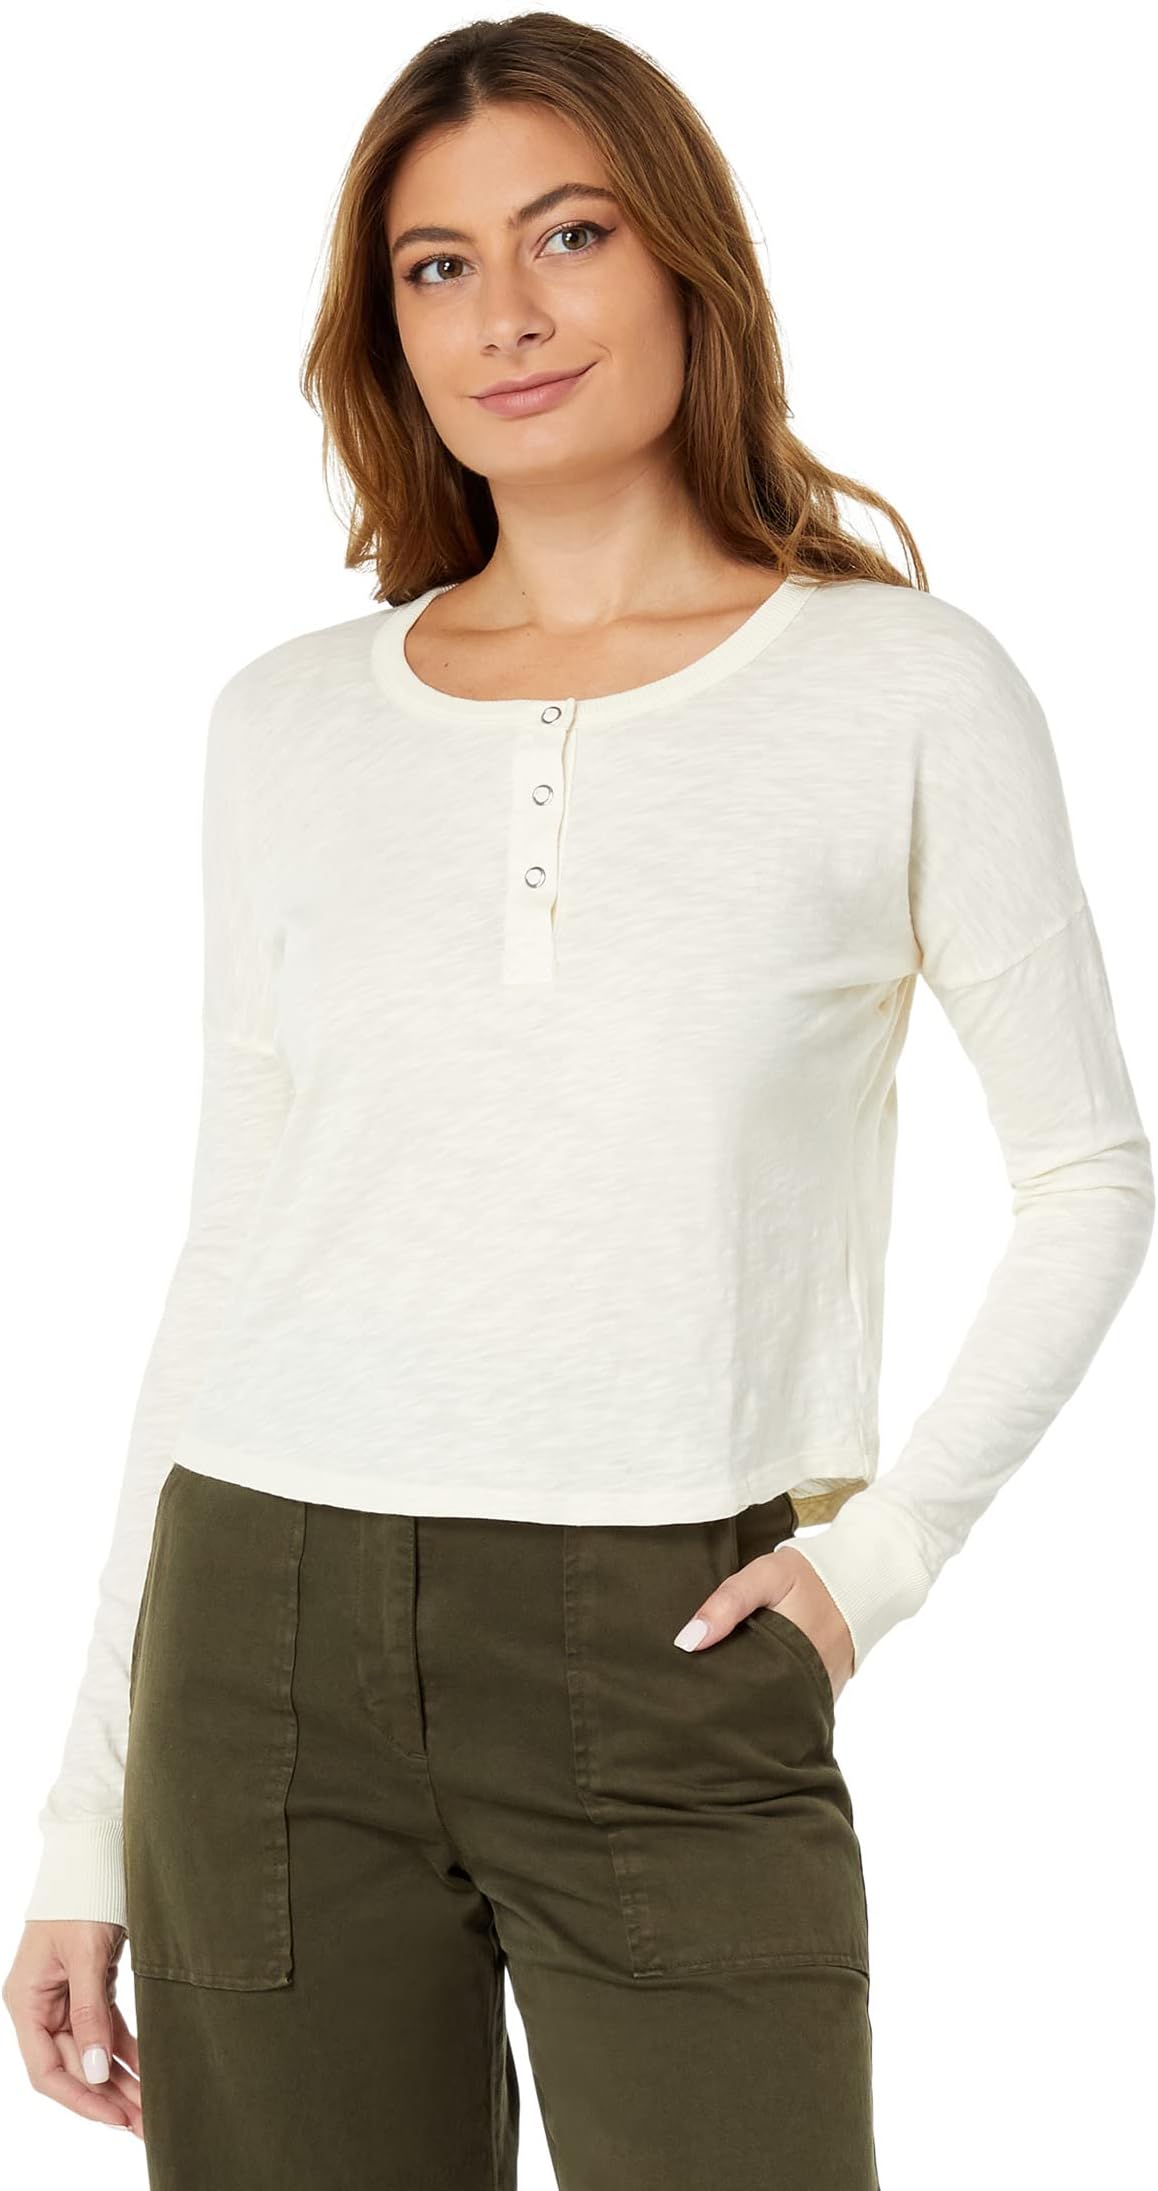 Укороченная футболка на пуговицах с длинным рукавом bobi Los Angeles, цвет Cream